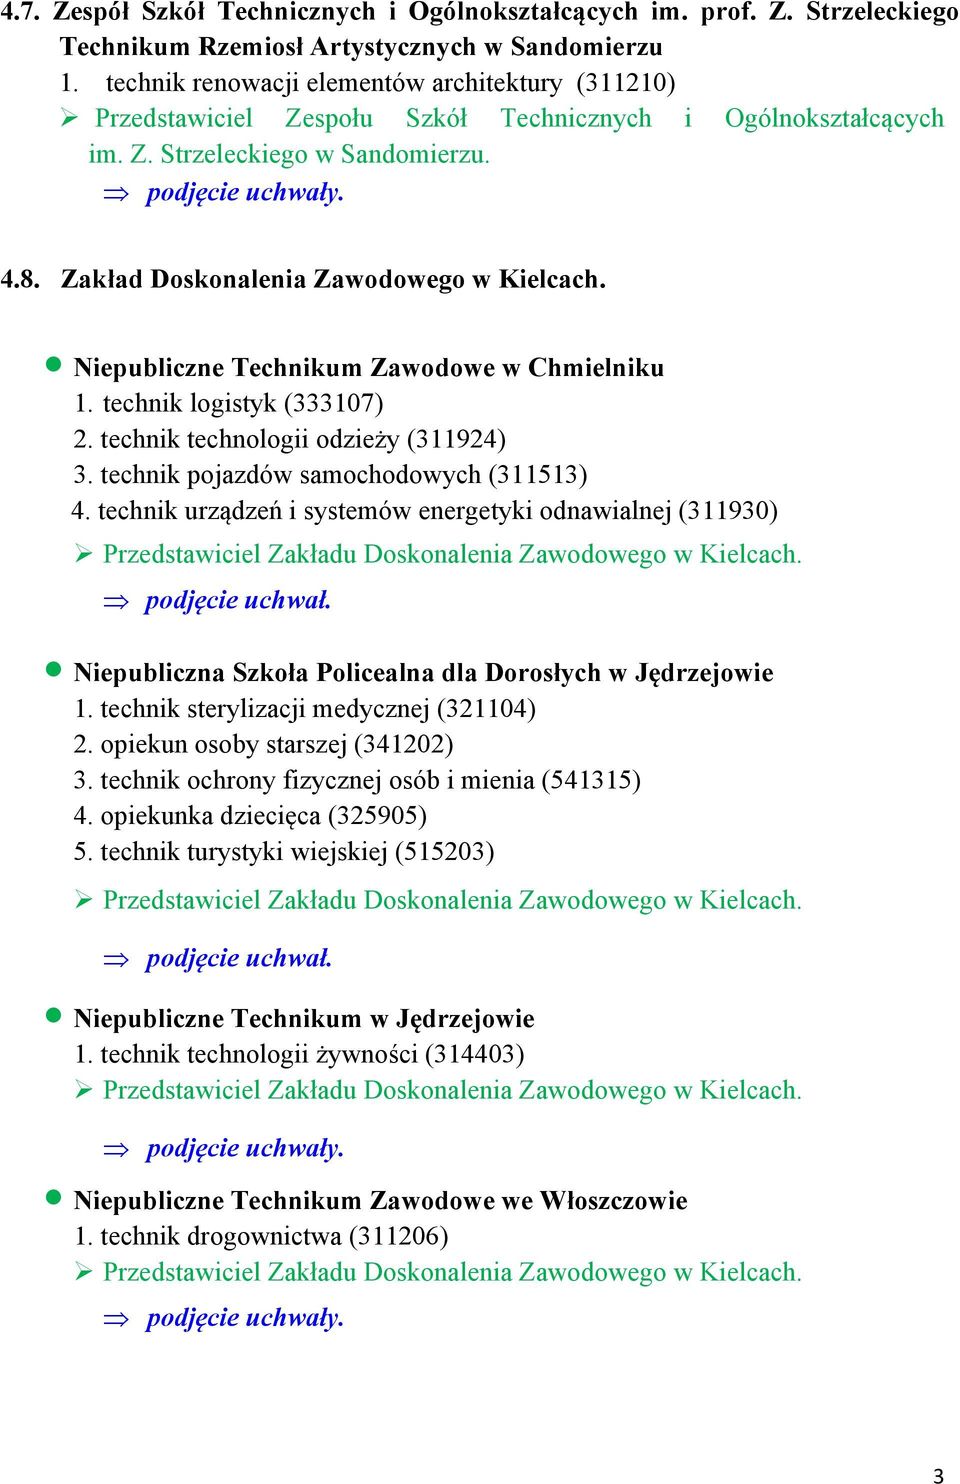 Niepubliczne Technikum Zawodowe w Chmielniku 1. technik logistyk (333107) 2. technik technologii odzieży (311924) 3. technik pojazdów samochodowych (311513) 4.